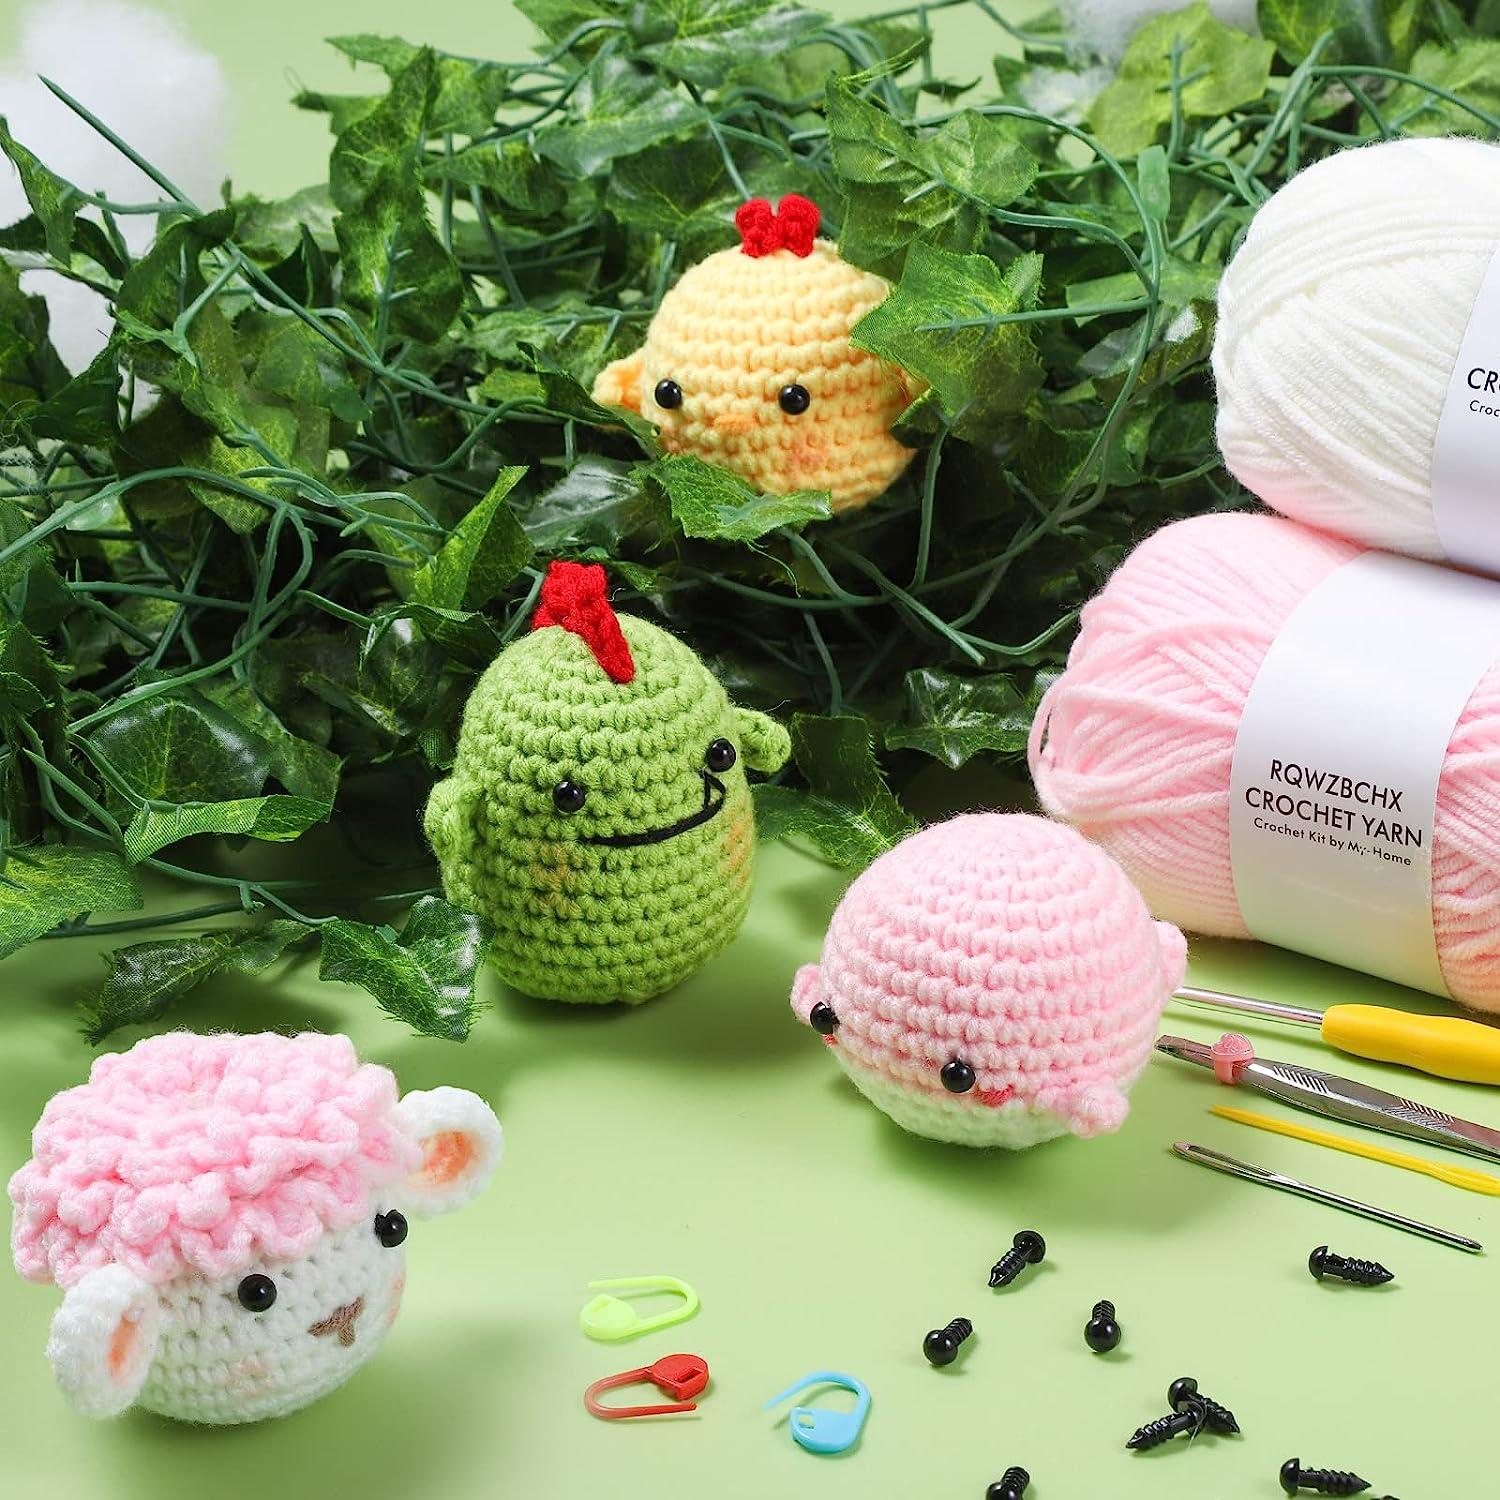 Crochet Kit for Beginners DIY Crochet Stuffed Animal Kit Beginner Crochet  Kit UK